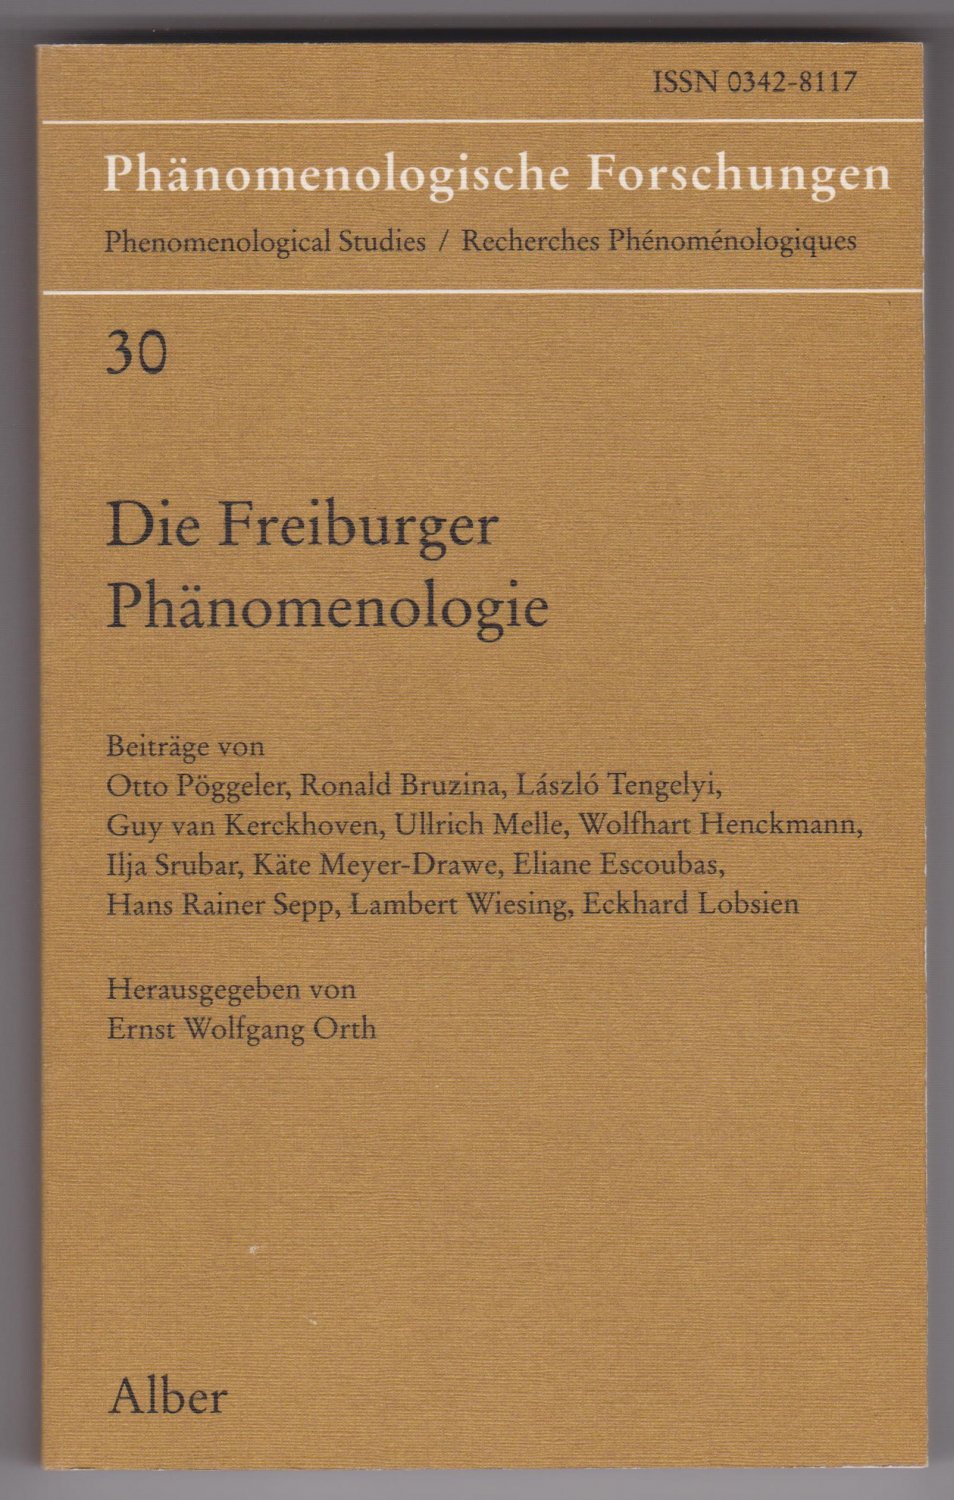 ORTH, Ernst Wolfgang (Herausgeber):  Die Freiburger Phänomenologie. Phenomenological Studies / Recherches phénoménologiques. 